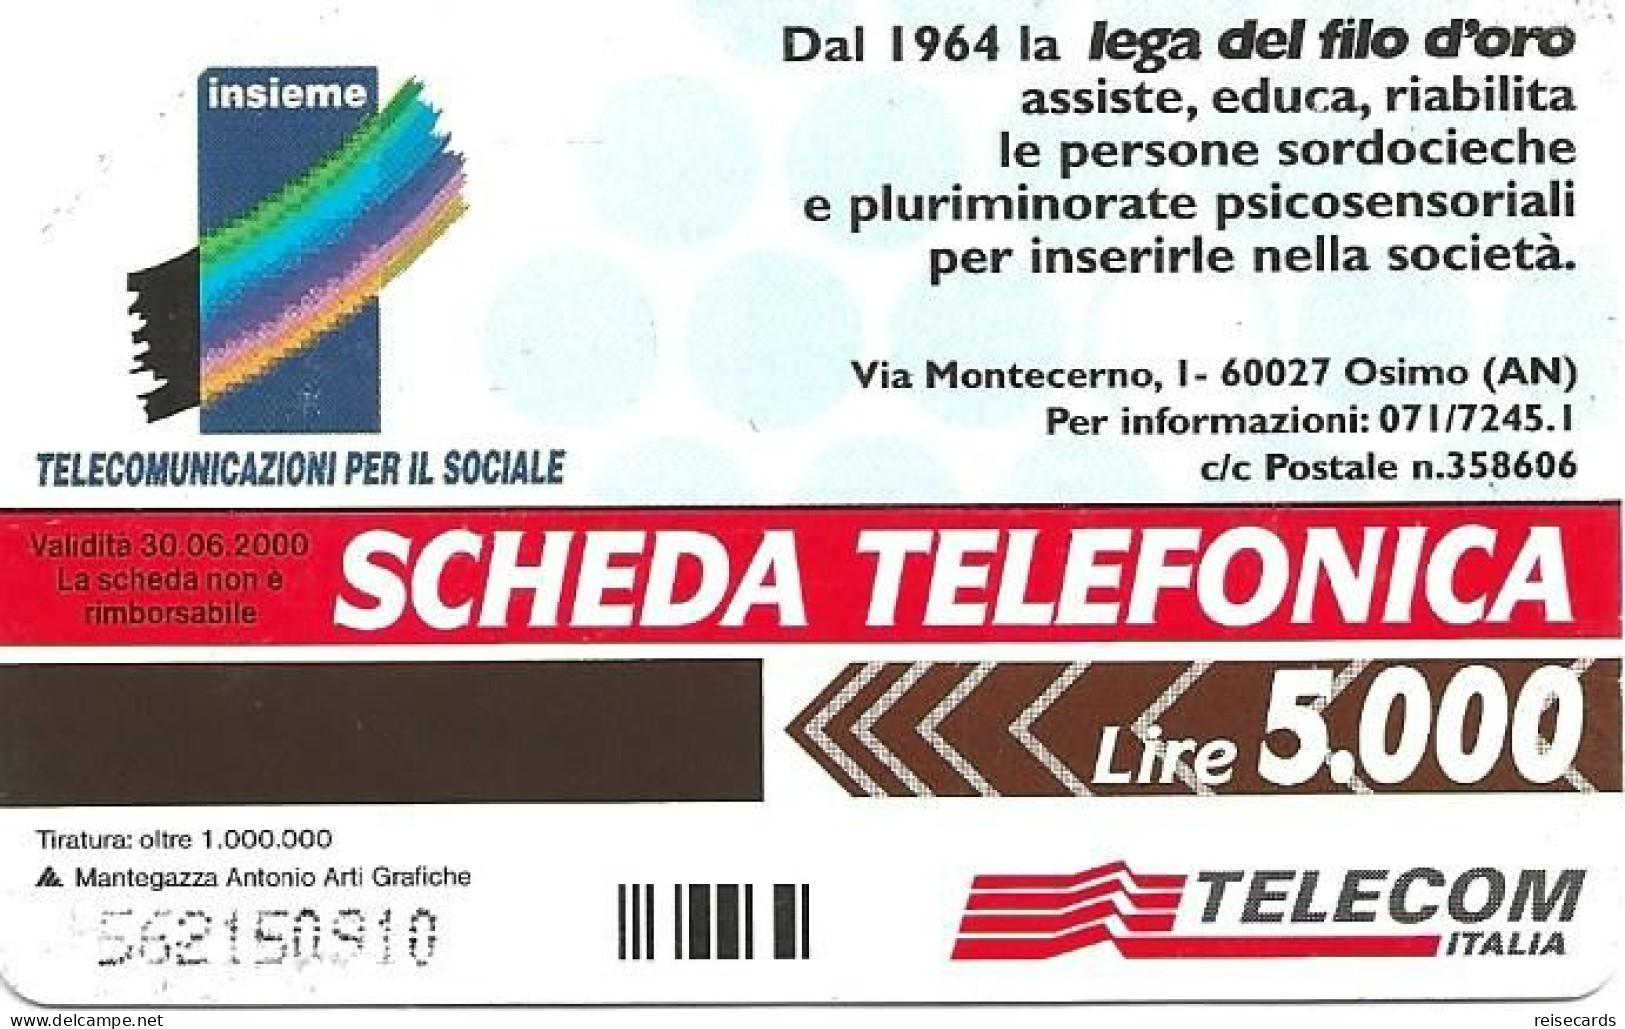 Italy: Telecom Italia - Lega Del Filo D'oro - Public Advertising